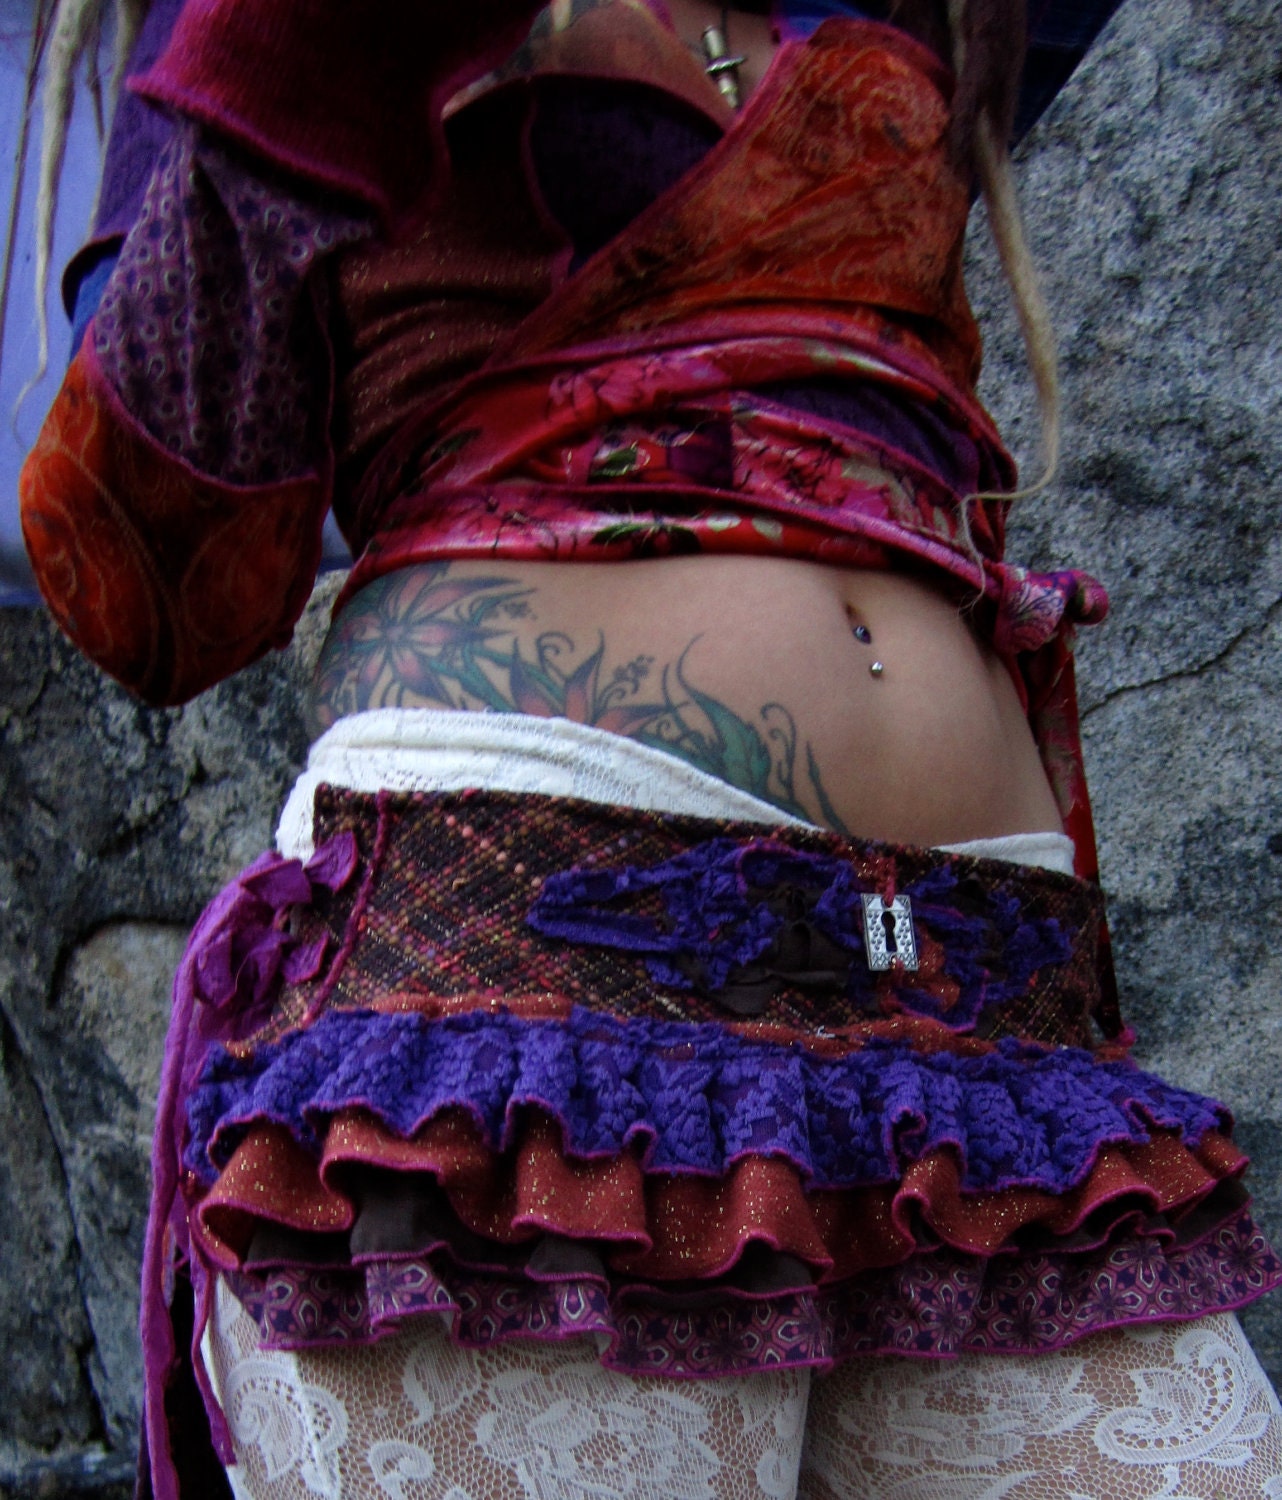 Festival Tattered Ruffle Skirt Pixie Clothing